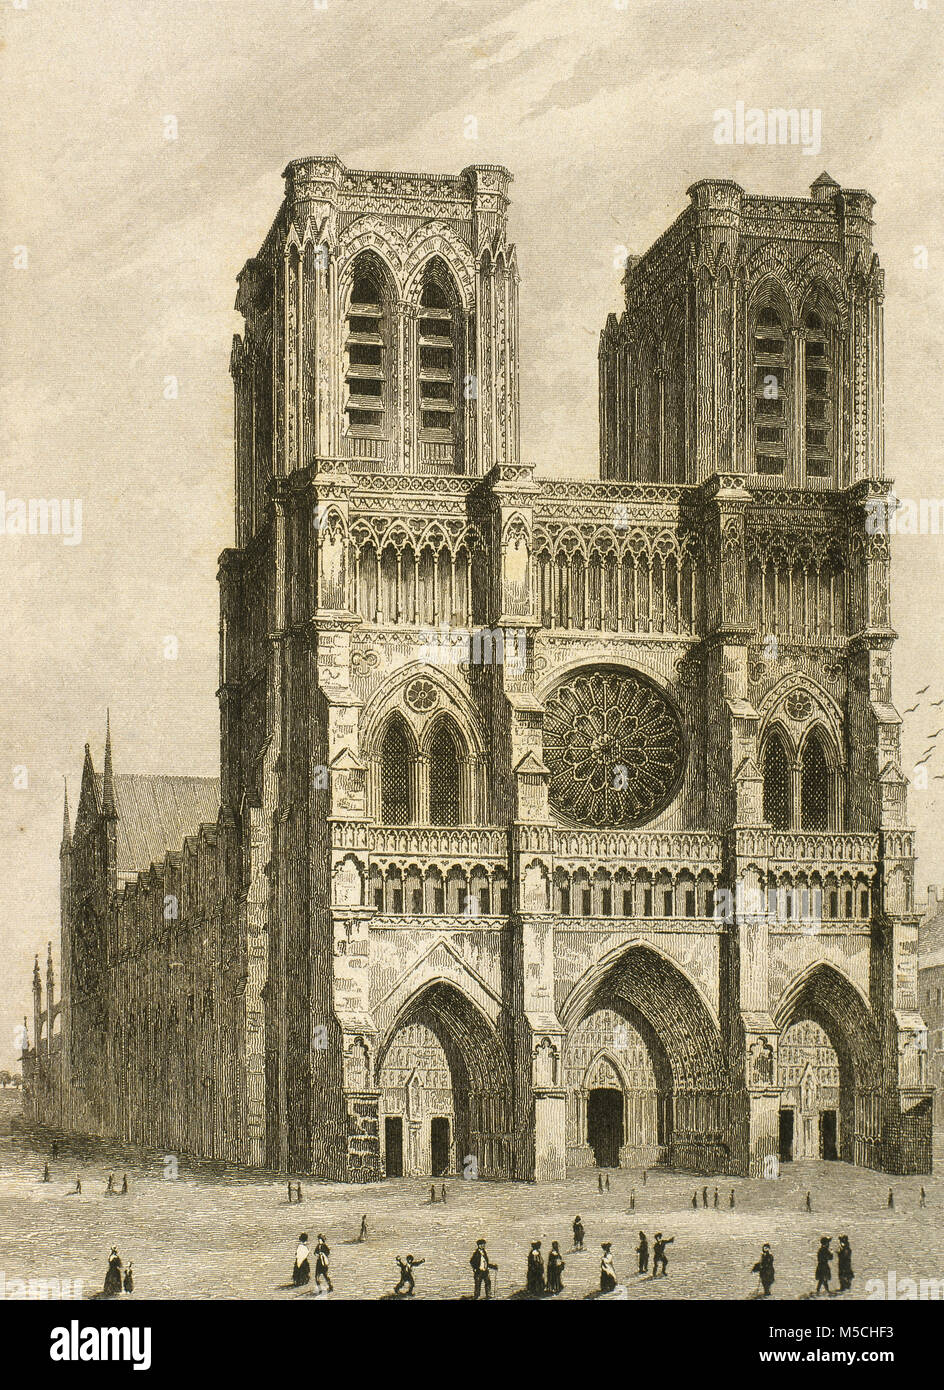 Cattedrale di Notre Dame di Parigi, Francia. La sua costruzione iniziò nel  1163 e fu terminata nel 1345. Disegno di Gaucherel. Incisione, 1841.  "Panorama Universal-France' Foto stock - Alamy